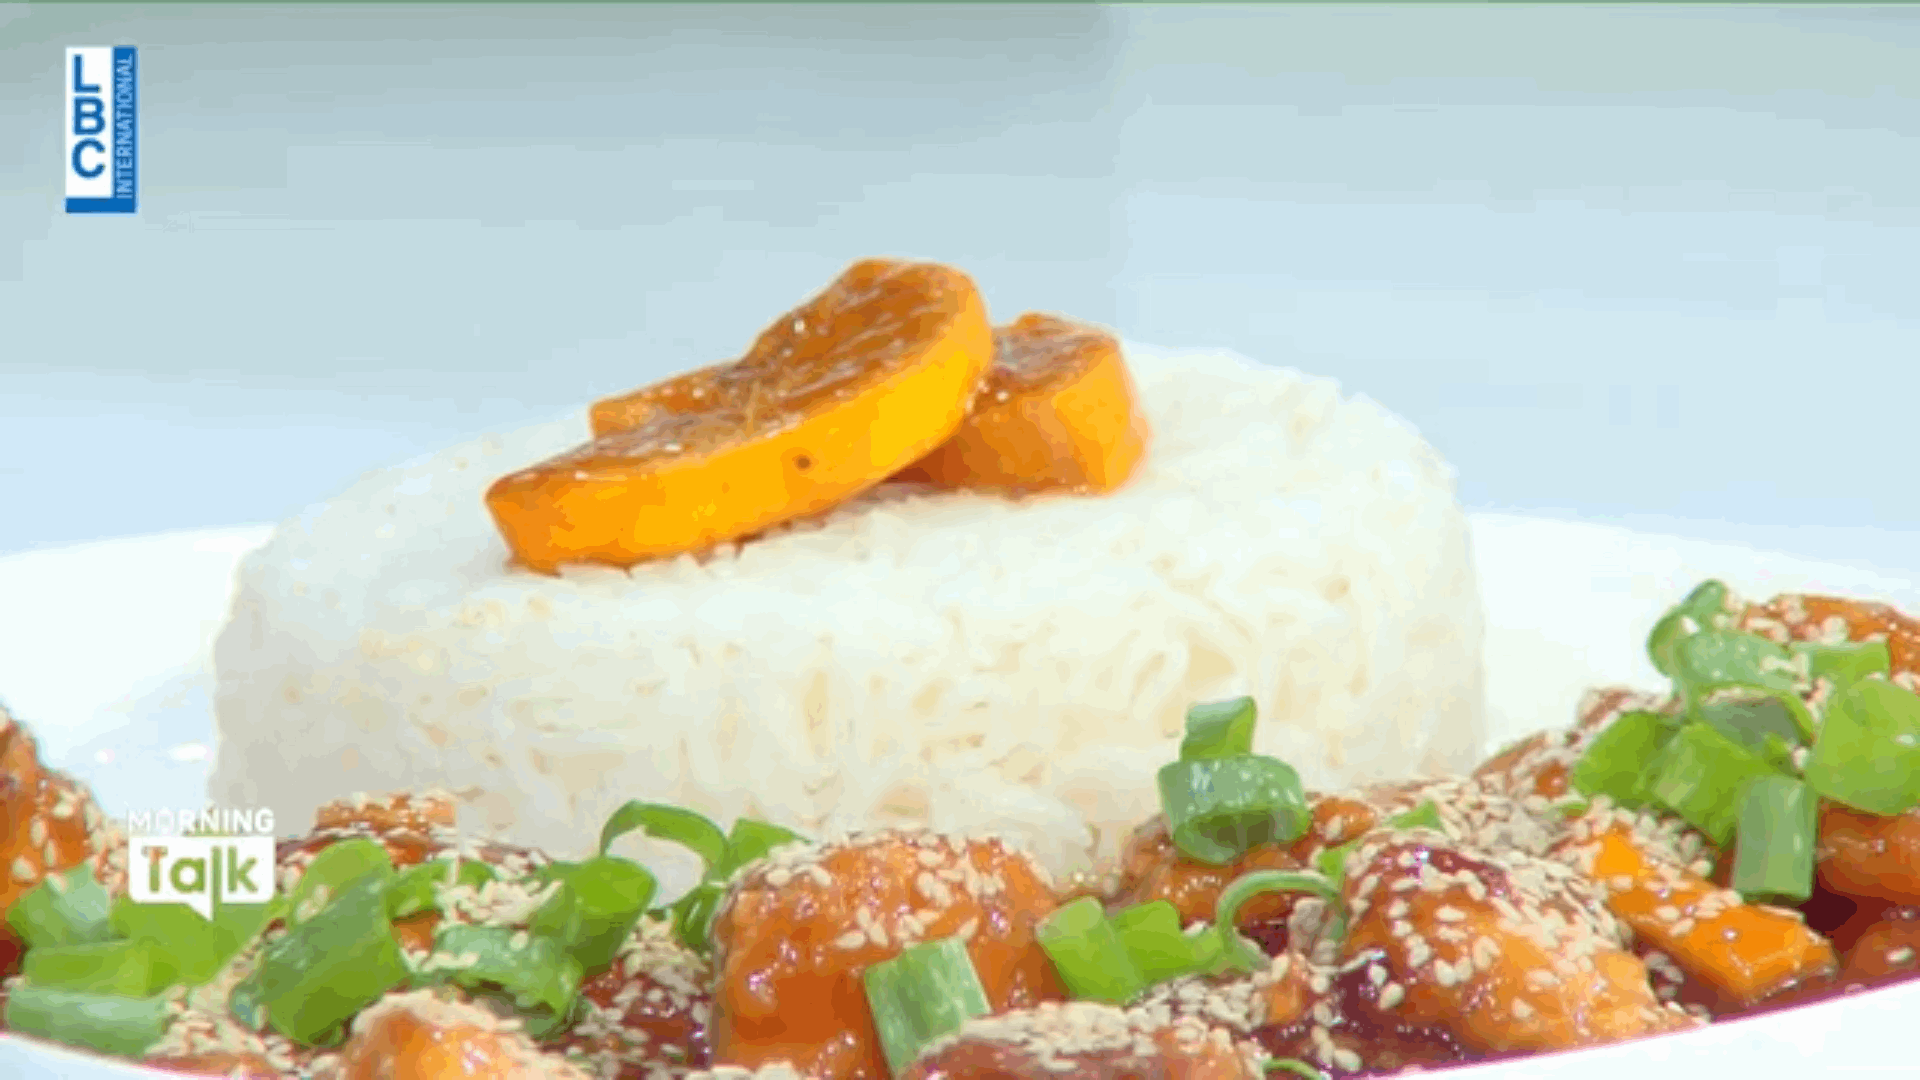 تعلموا تحضير وصفة الدجاج بالبرتقال مع الأرز مع الشيف فادي زغيب